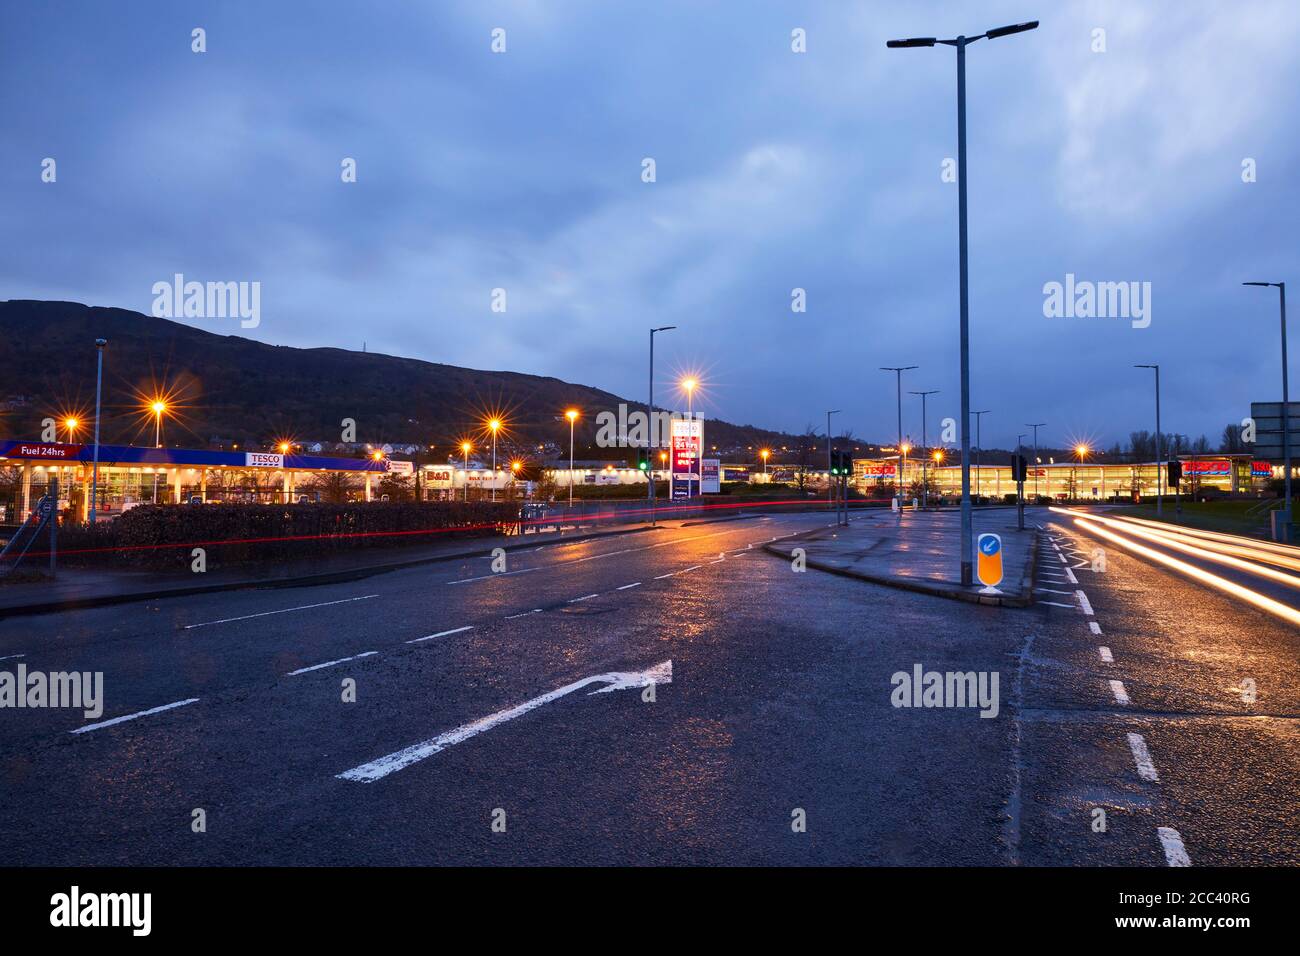 Entrée du parking. Abbey Retail Park, Belfast, Belfast, Irlande. Architecte: N/A, 2019. Banque D'Images